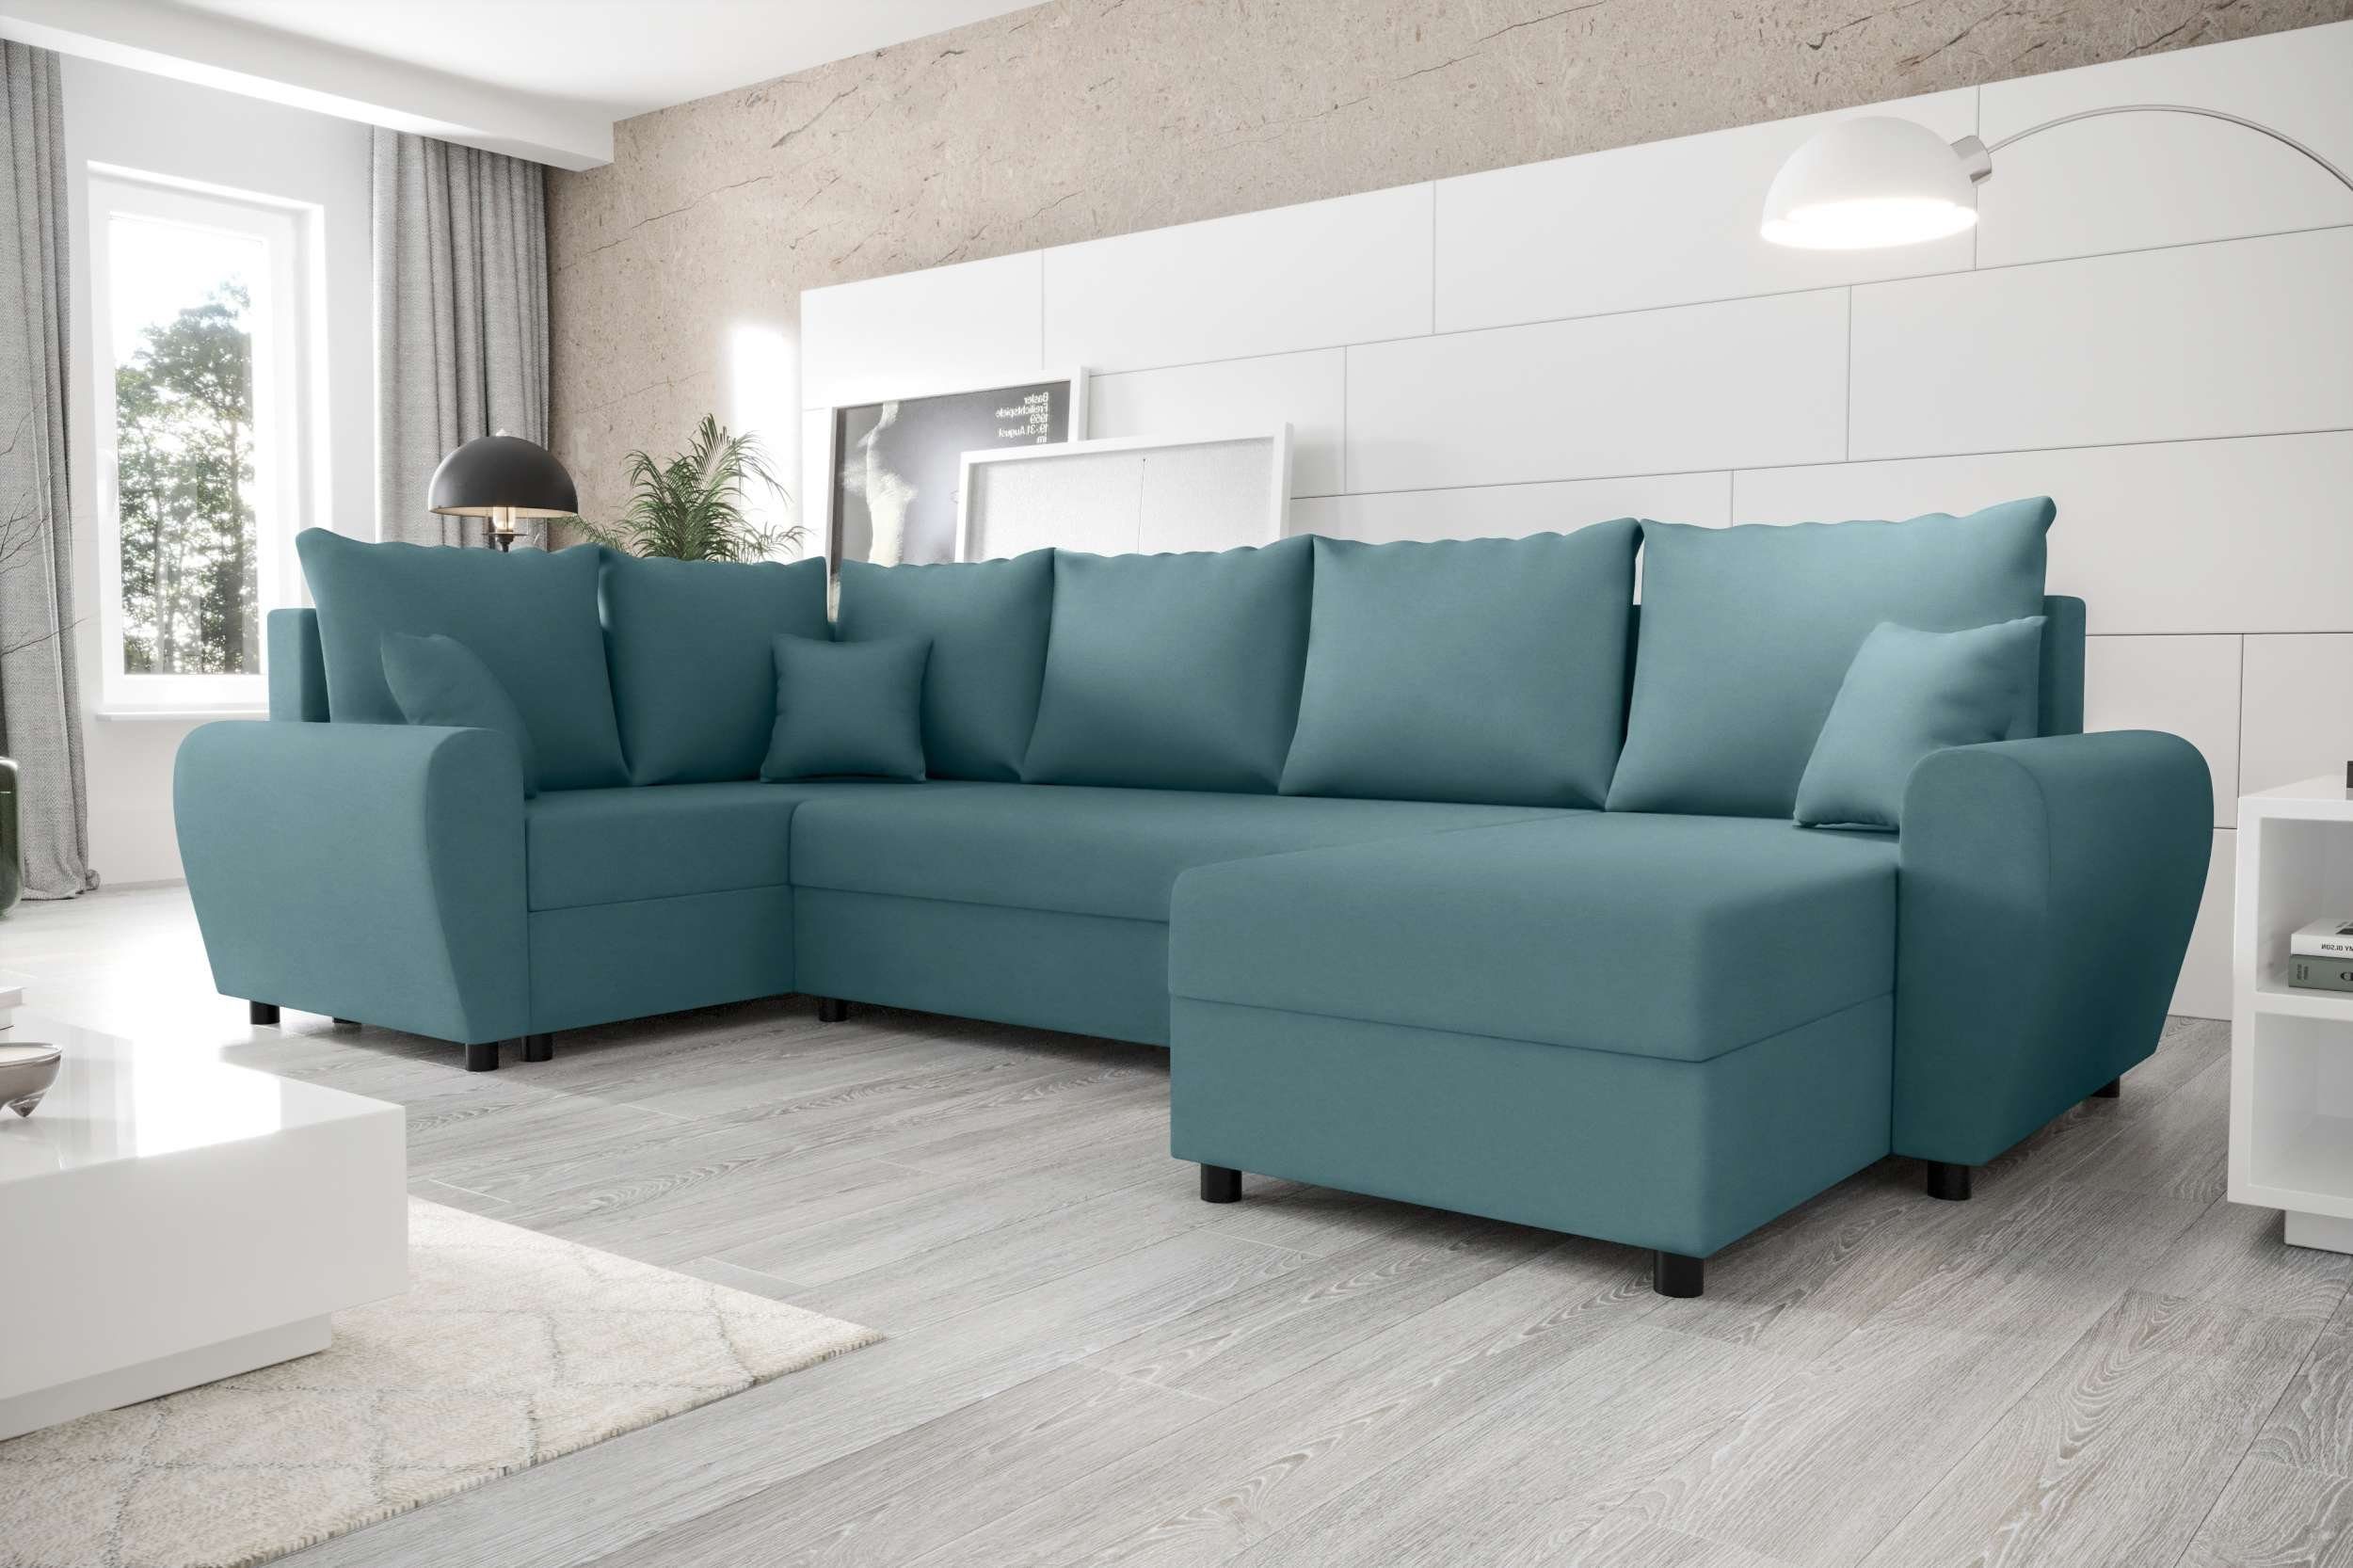 mit Wohnlandschaft mit Bettkasten, Modern Stylefy Sitzkomfort, Design Sofa, Eckcouch, Bettfunktion, U-Form, Haven,